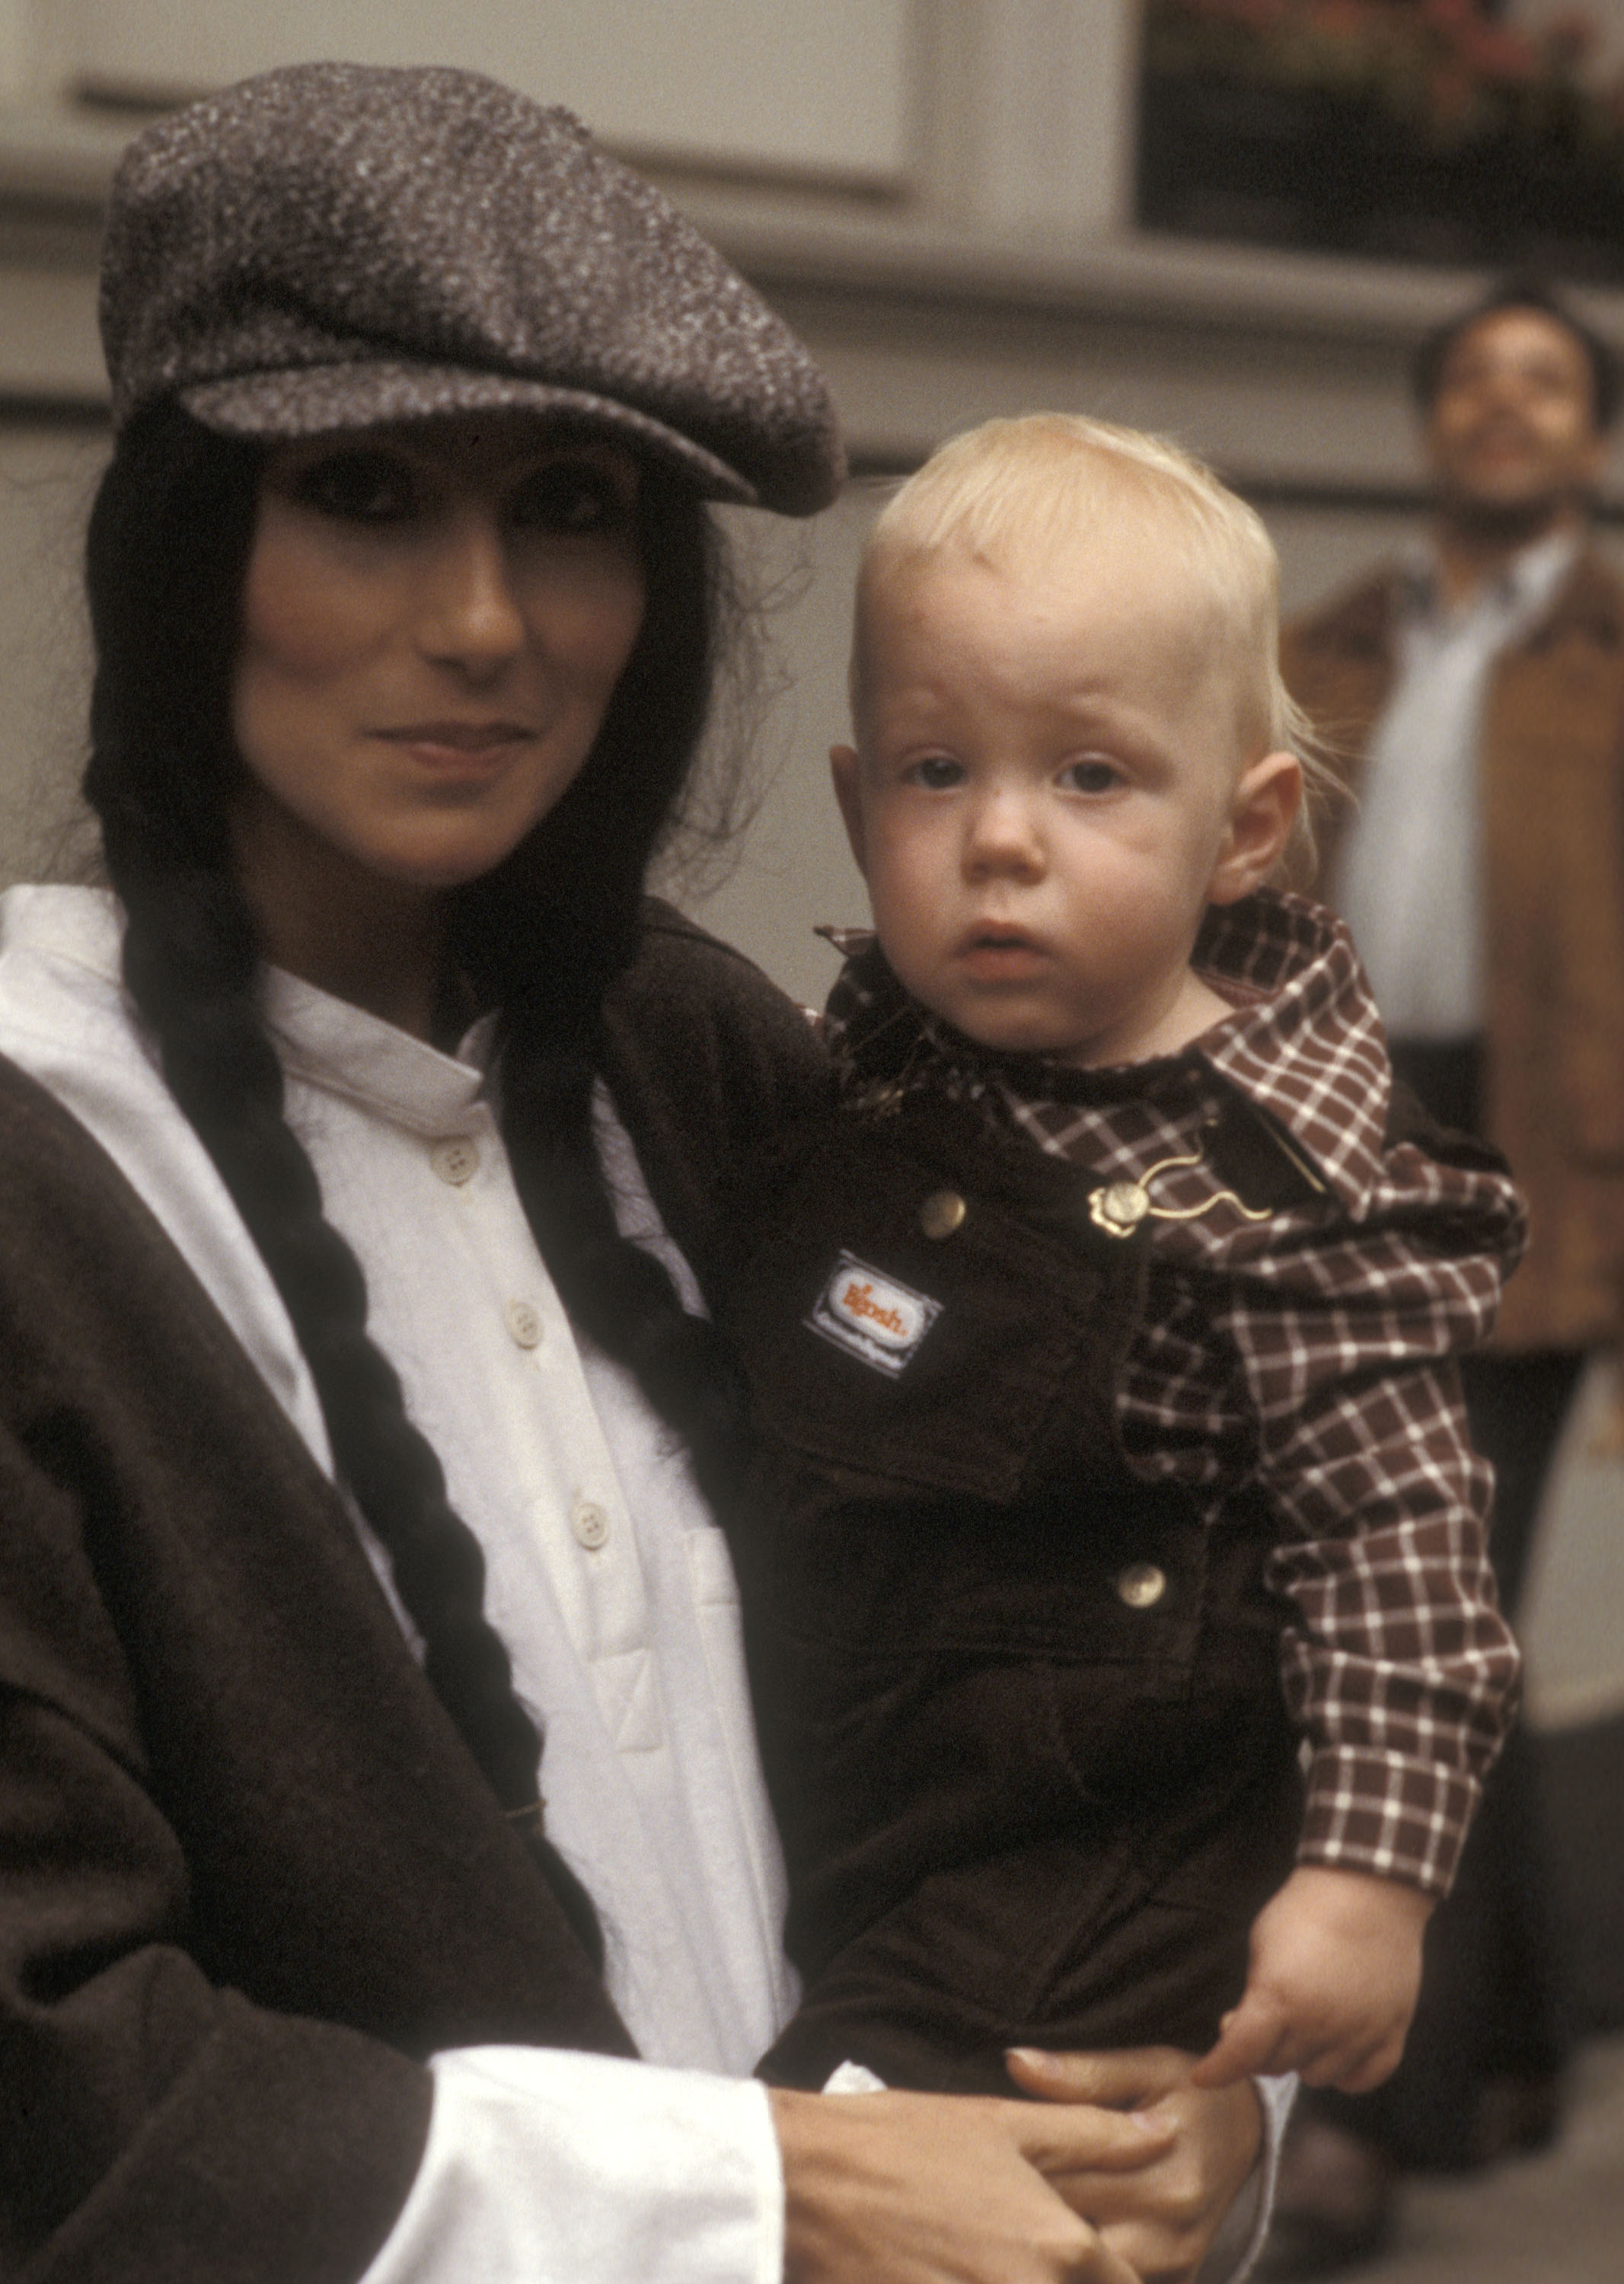 Cher et son fils Elijah Blue Allman le 23 septembre 1977 à New York | Source : Getty Images